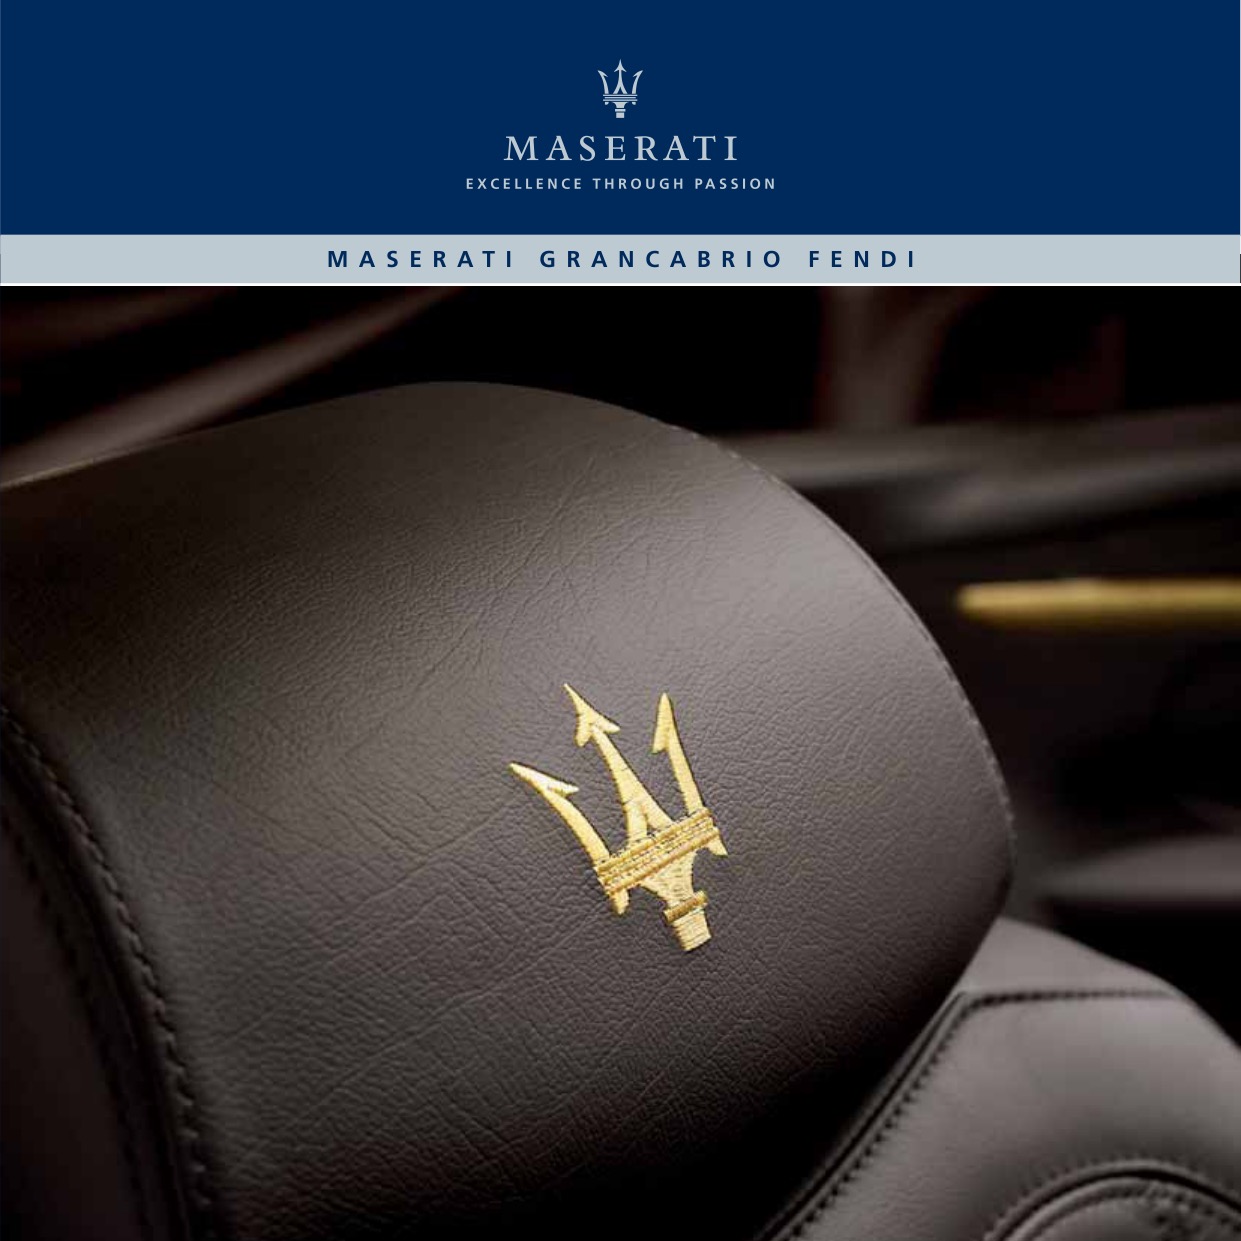 Maserati Grancabrio Fendi Brochure